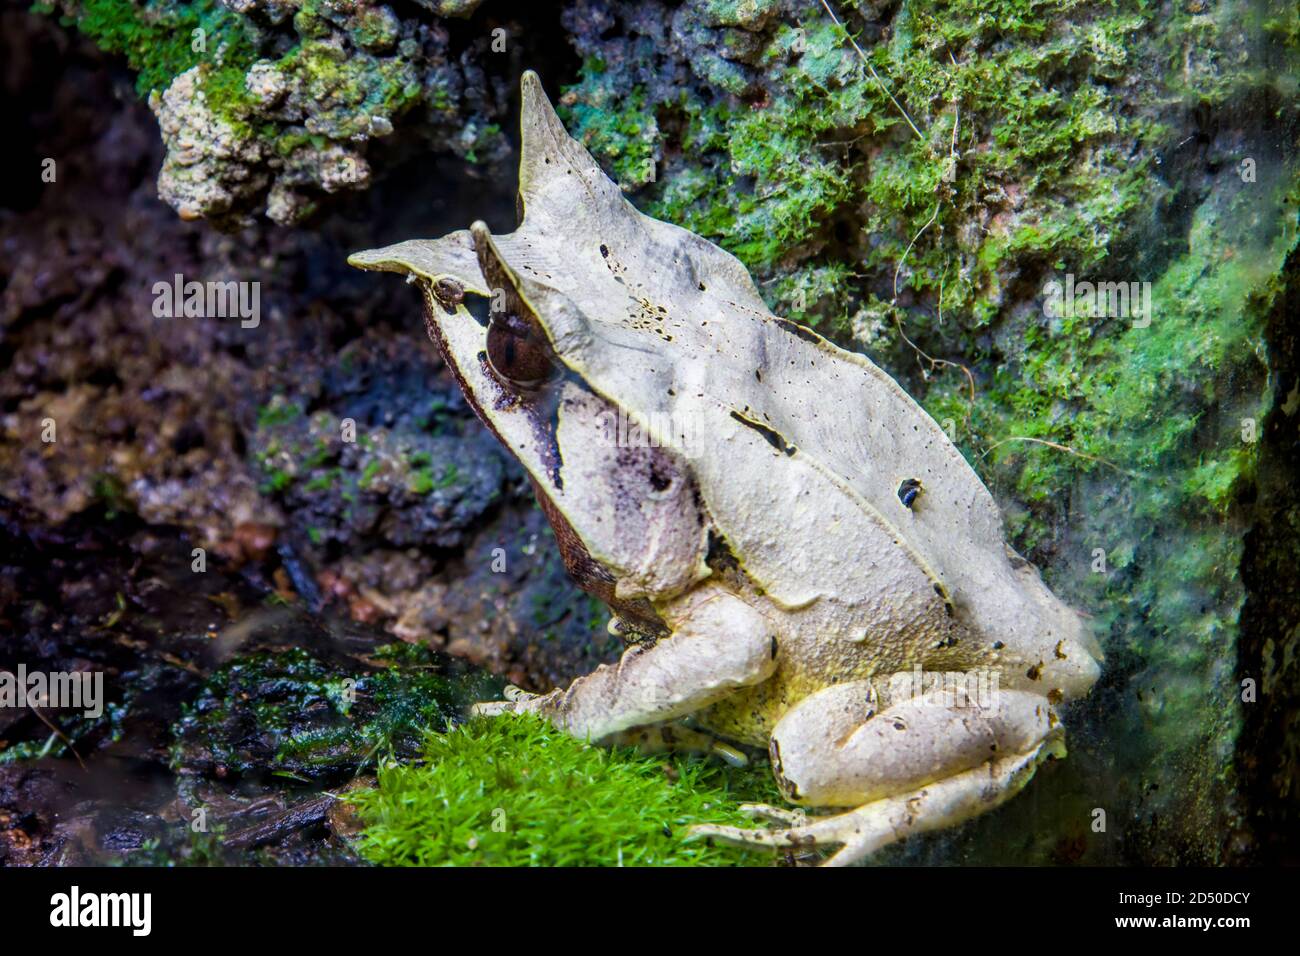 La grenouille à long nez (Megophrys nasuta) est une espèce de grenouille limitée aux zones de la forêt tropicale du sud de la Thaïlande et de la Malaisie péninsulaire. Banque D'Images